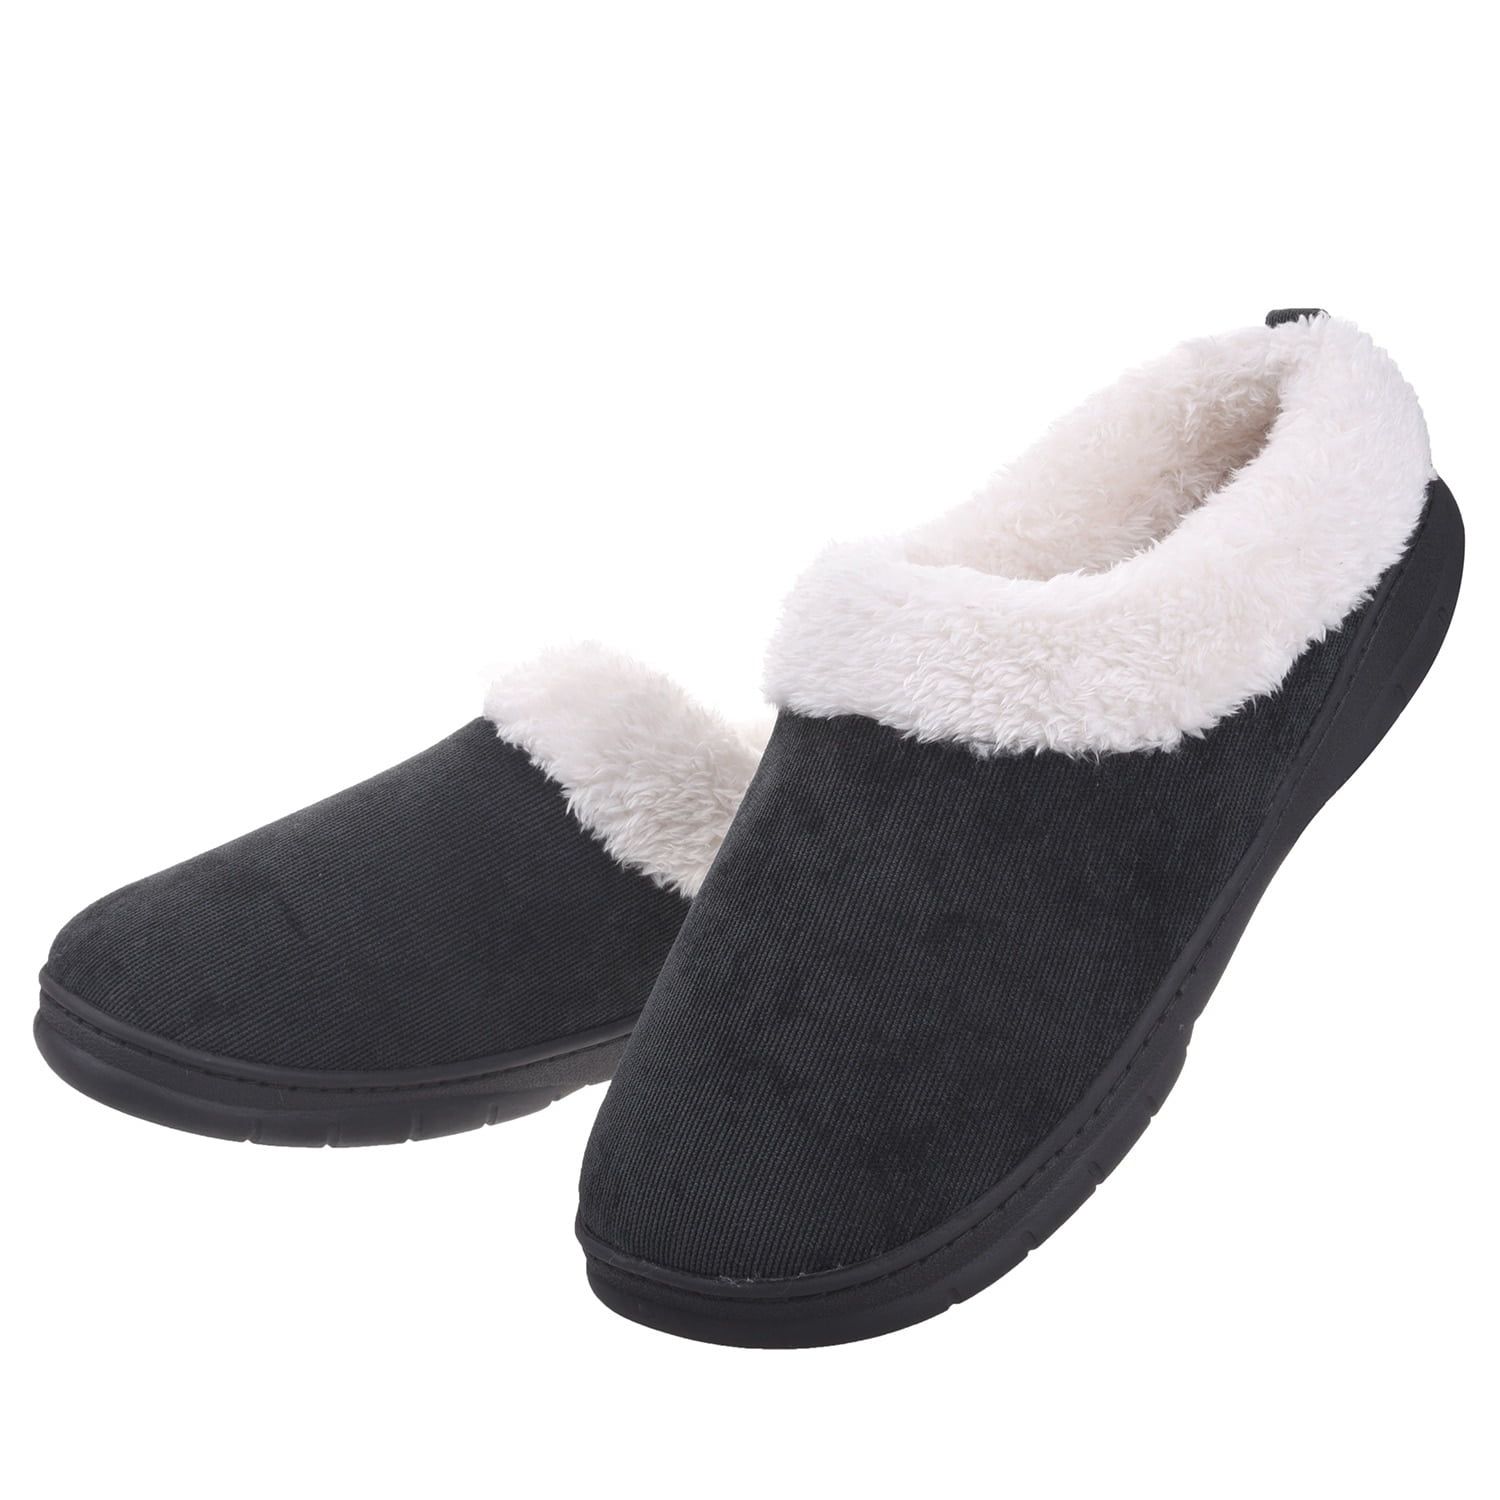 Overstock - Men's Fleece Plush Lining Slip on Slippers Indoor/Outdoor ...